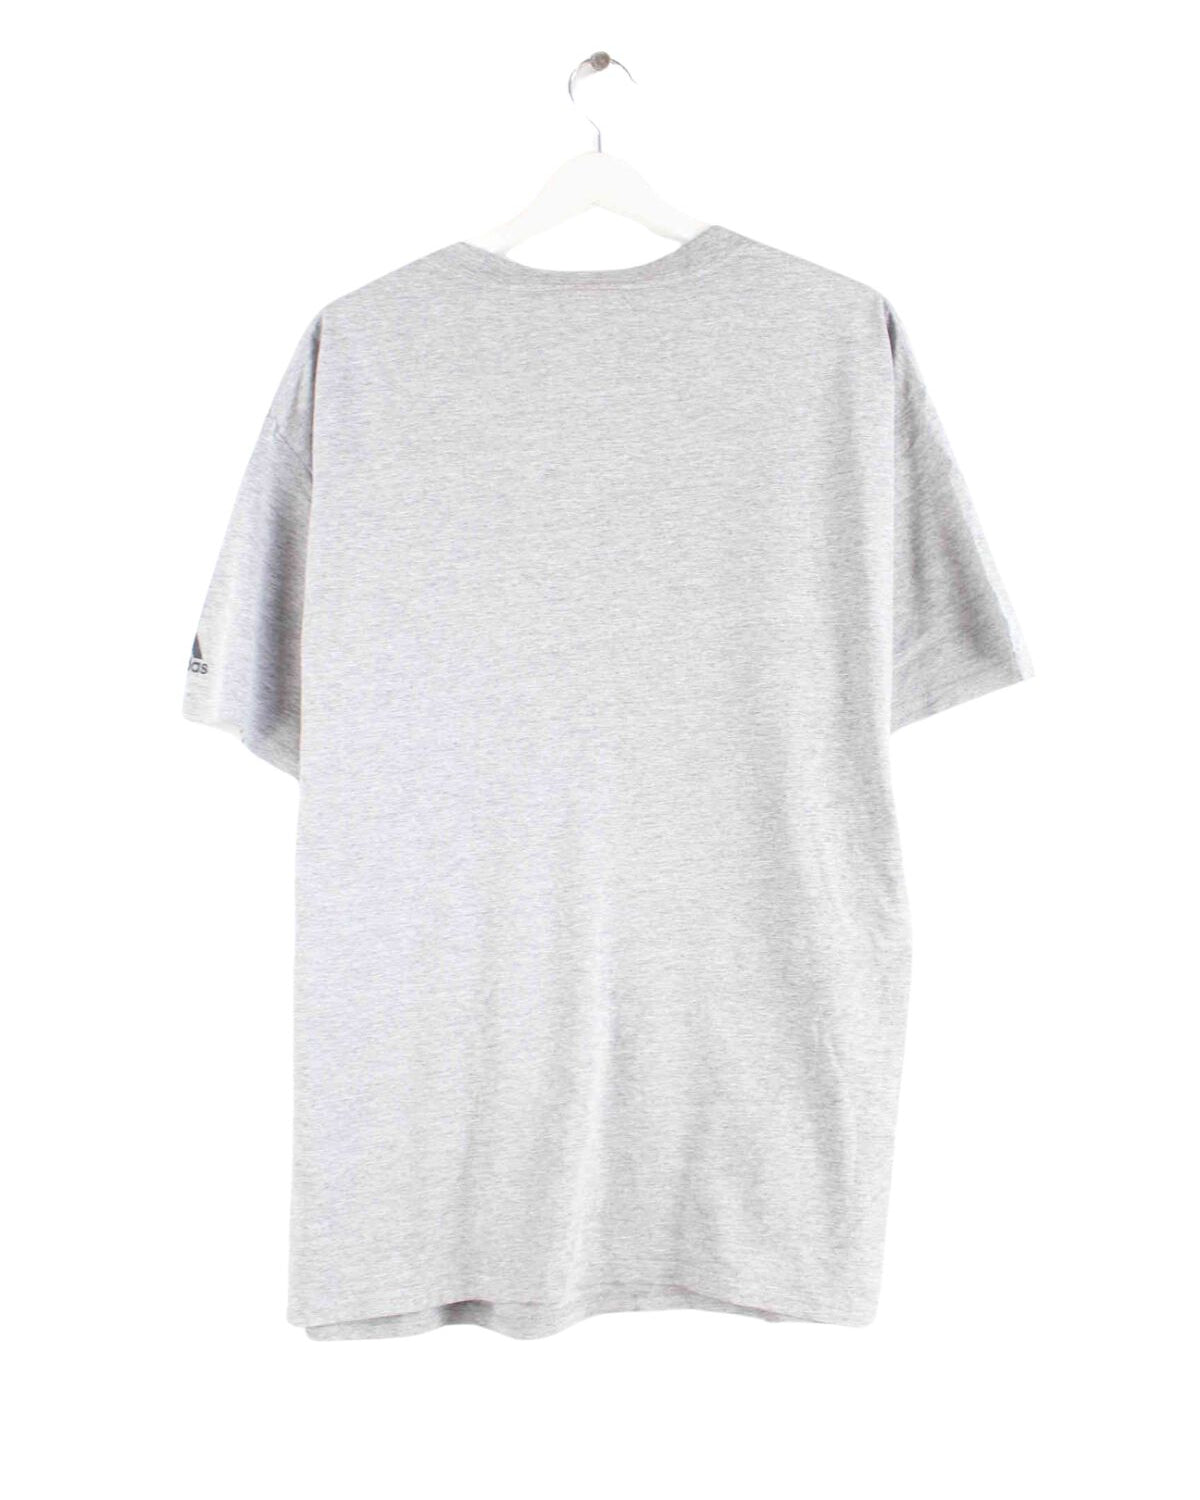 Adidas Flames UIC Print T-Shirt Grau M (back image)